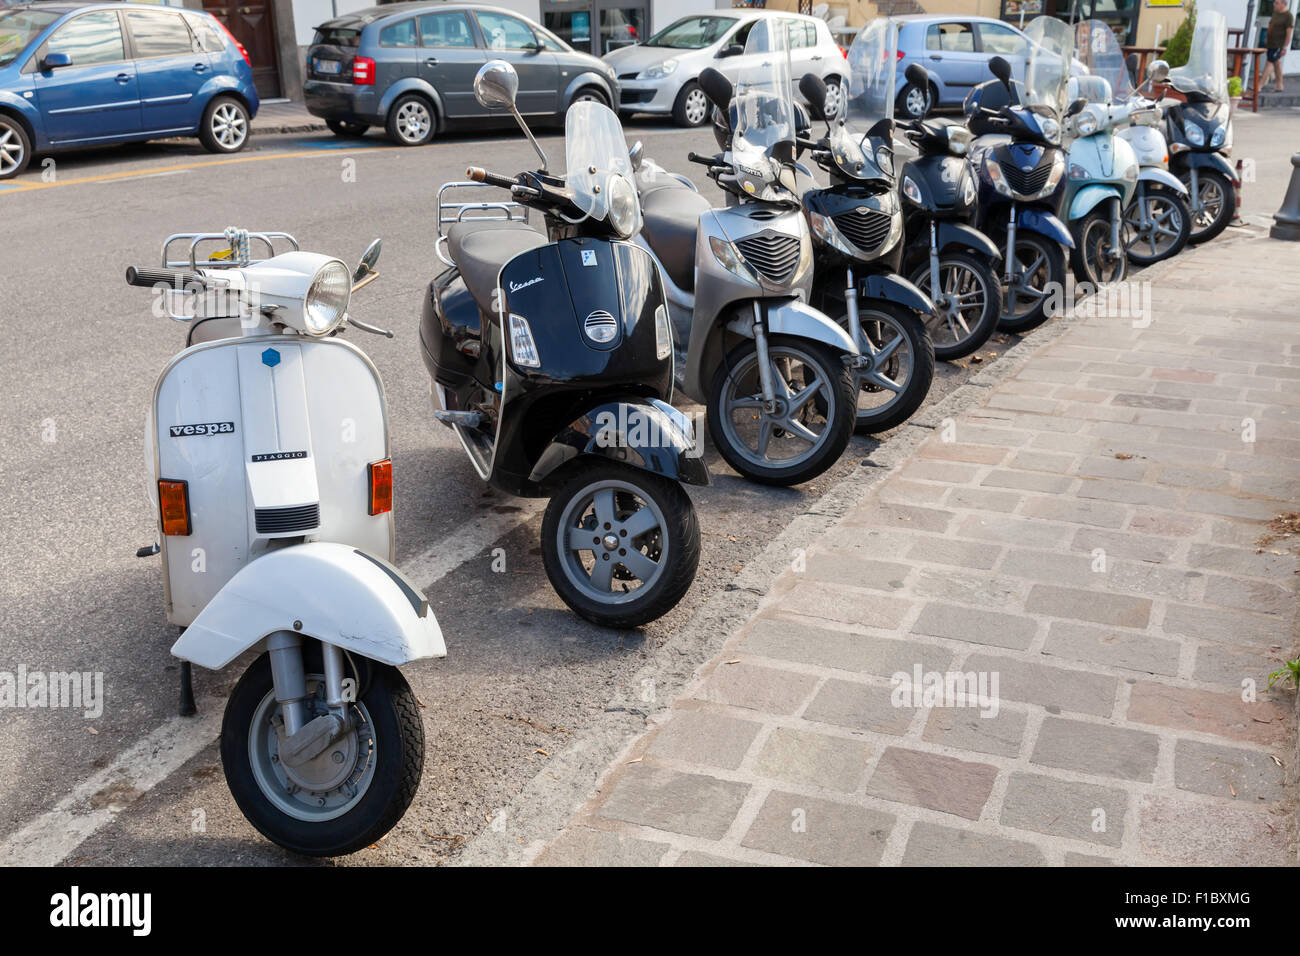 Lacco Ameno, Italia - 15 agosto 2015: Classic Vespa e scooter Honda sta parcheggiato su una strada, l'isola d' Ischia Foto Stock